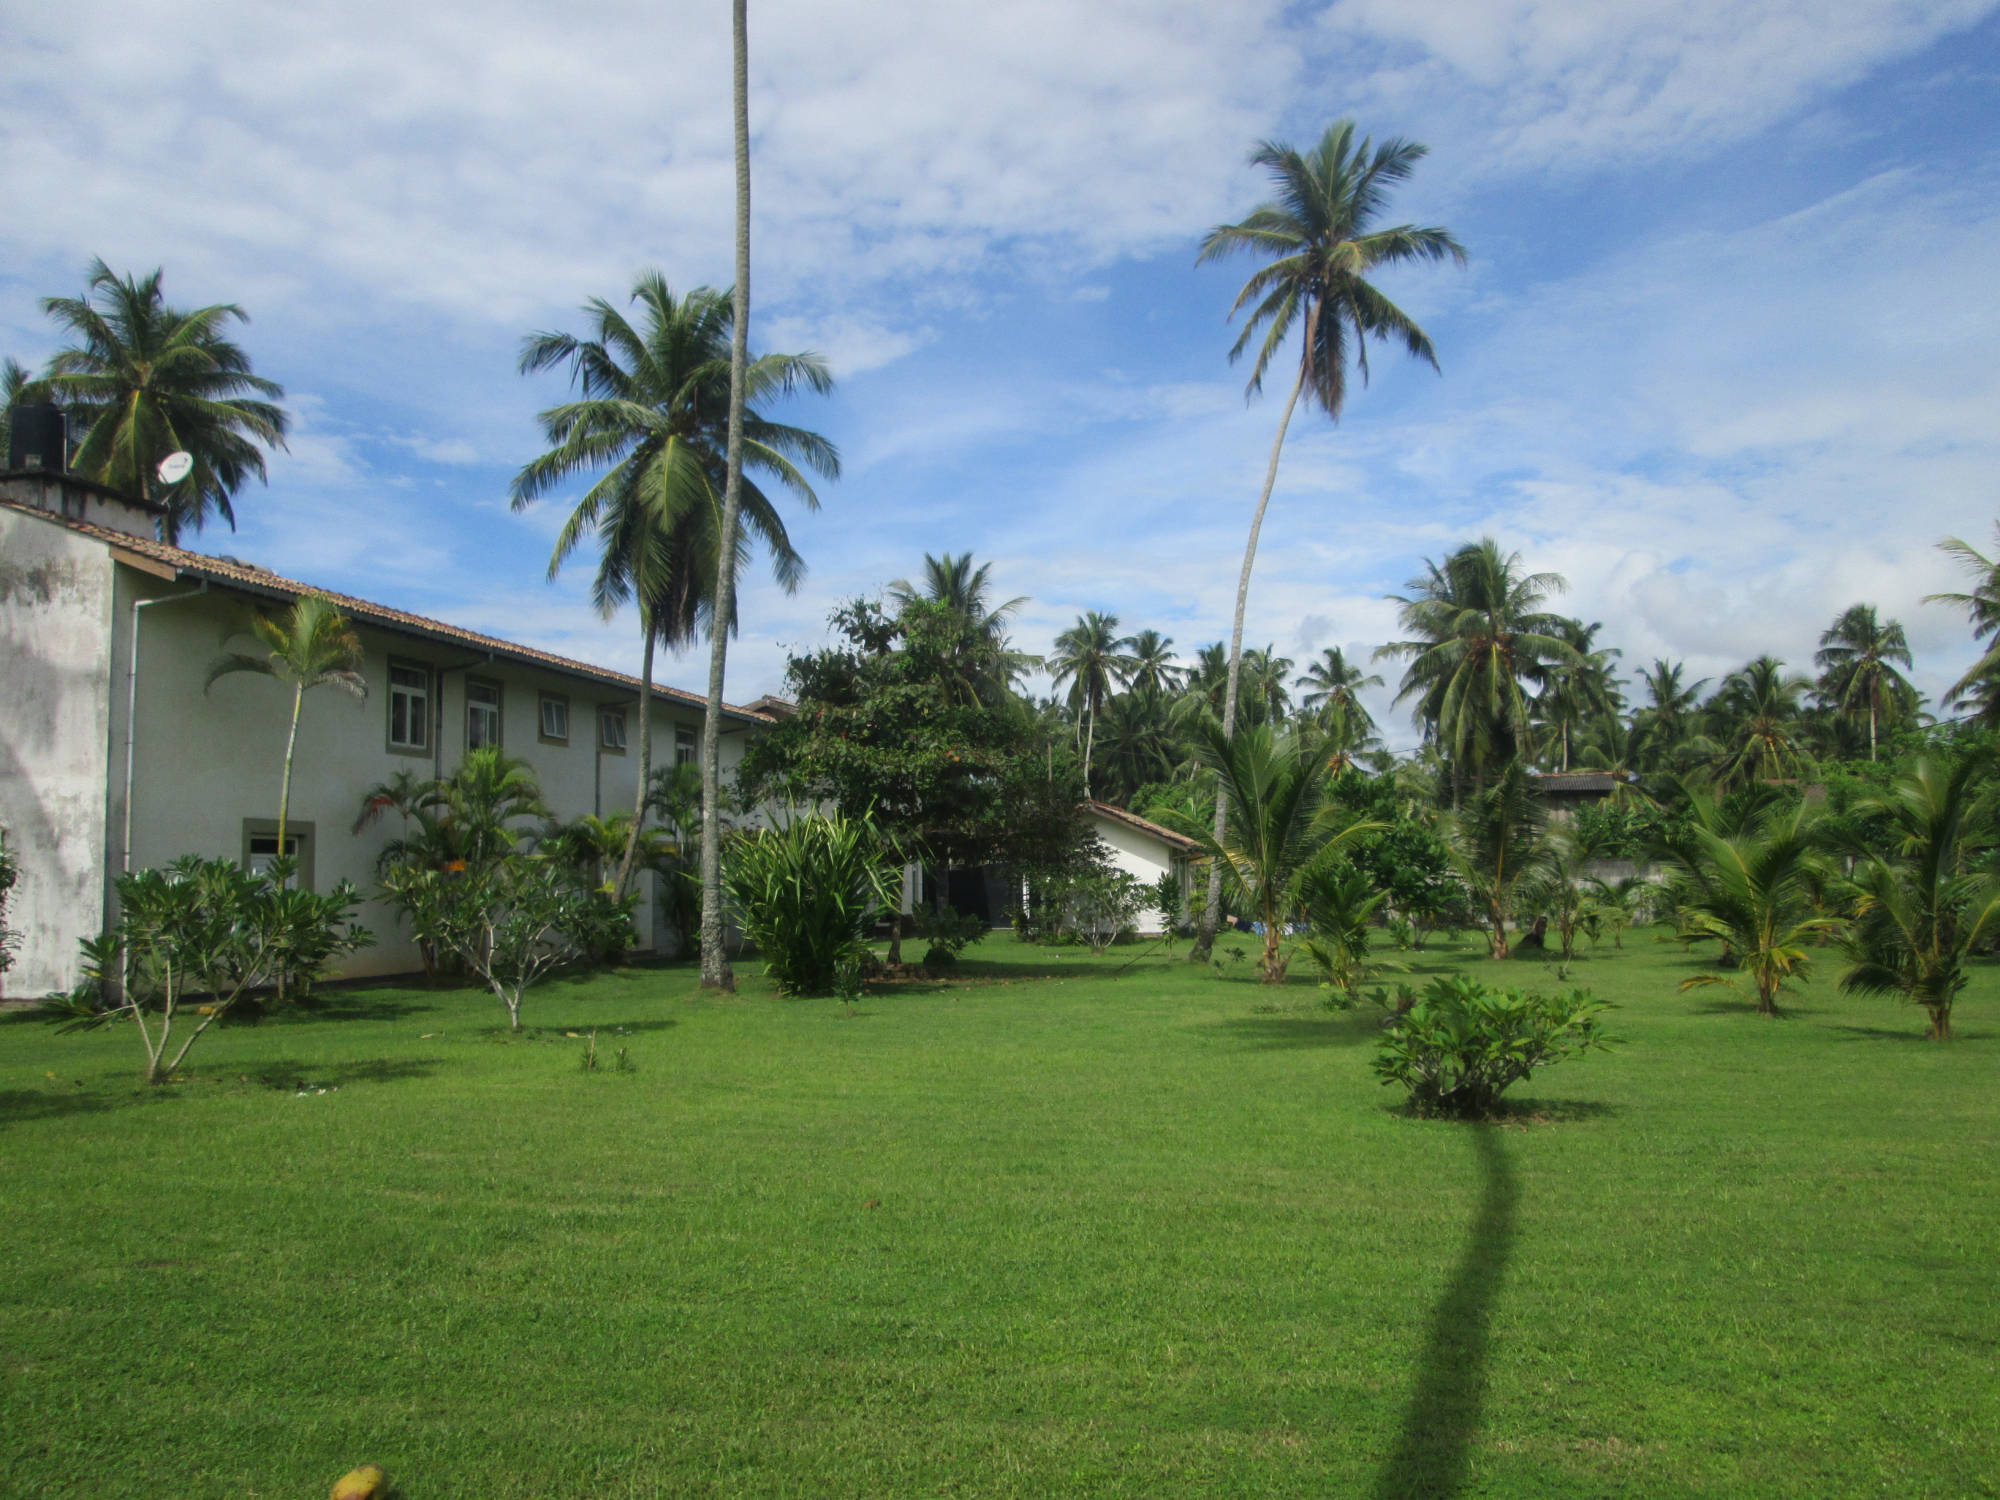 Raja Beach Hotel Servicegebäude, Bungalow und Garten